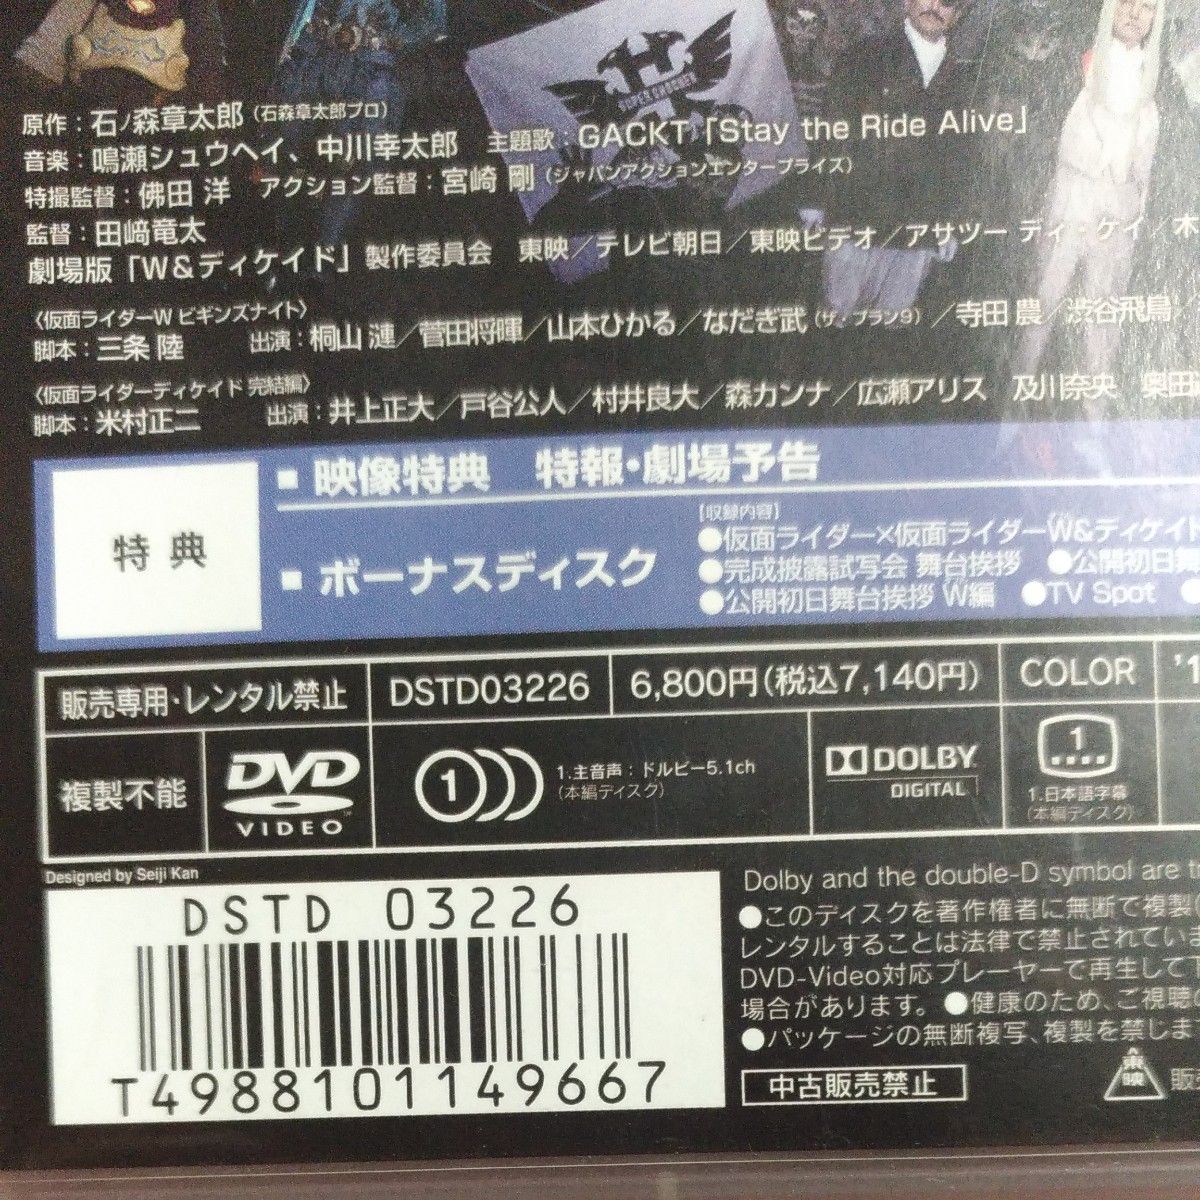 ☆仮面ライダー×仮面ライダーW＆ディケイド MOVIE大戦 2010 DVD2枚組